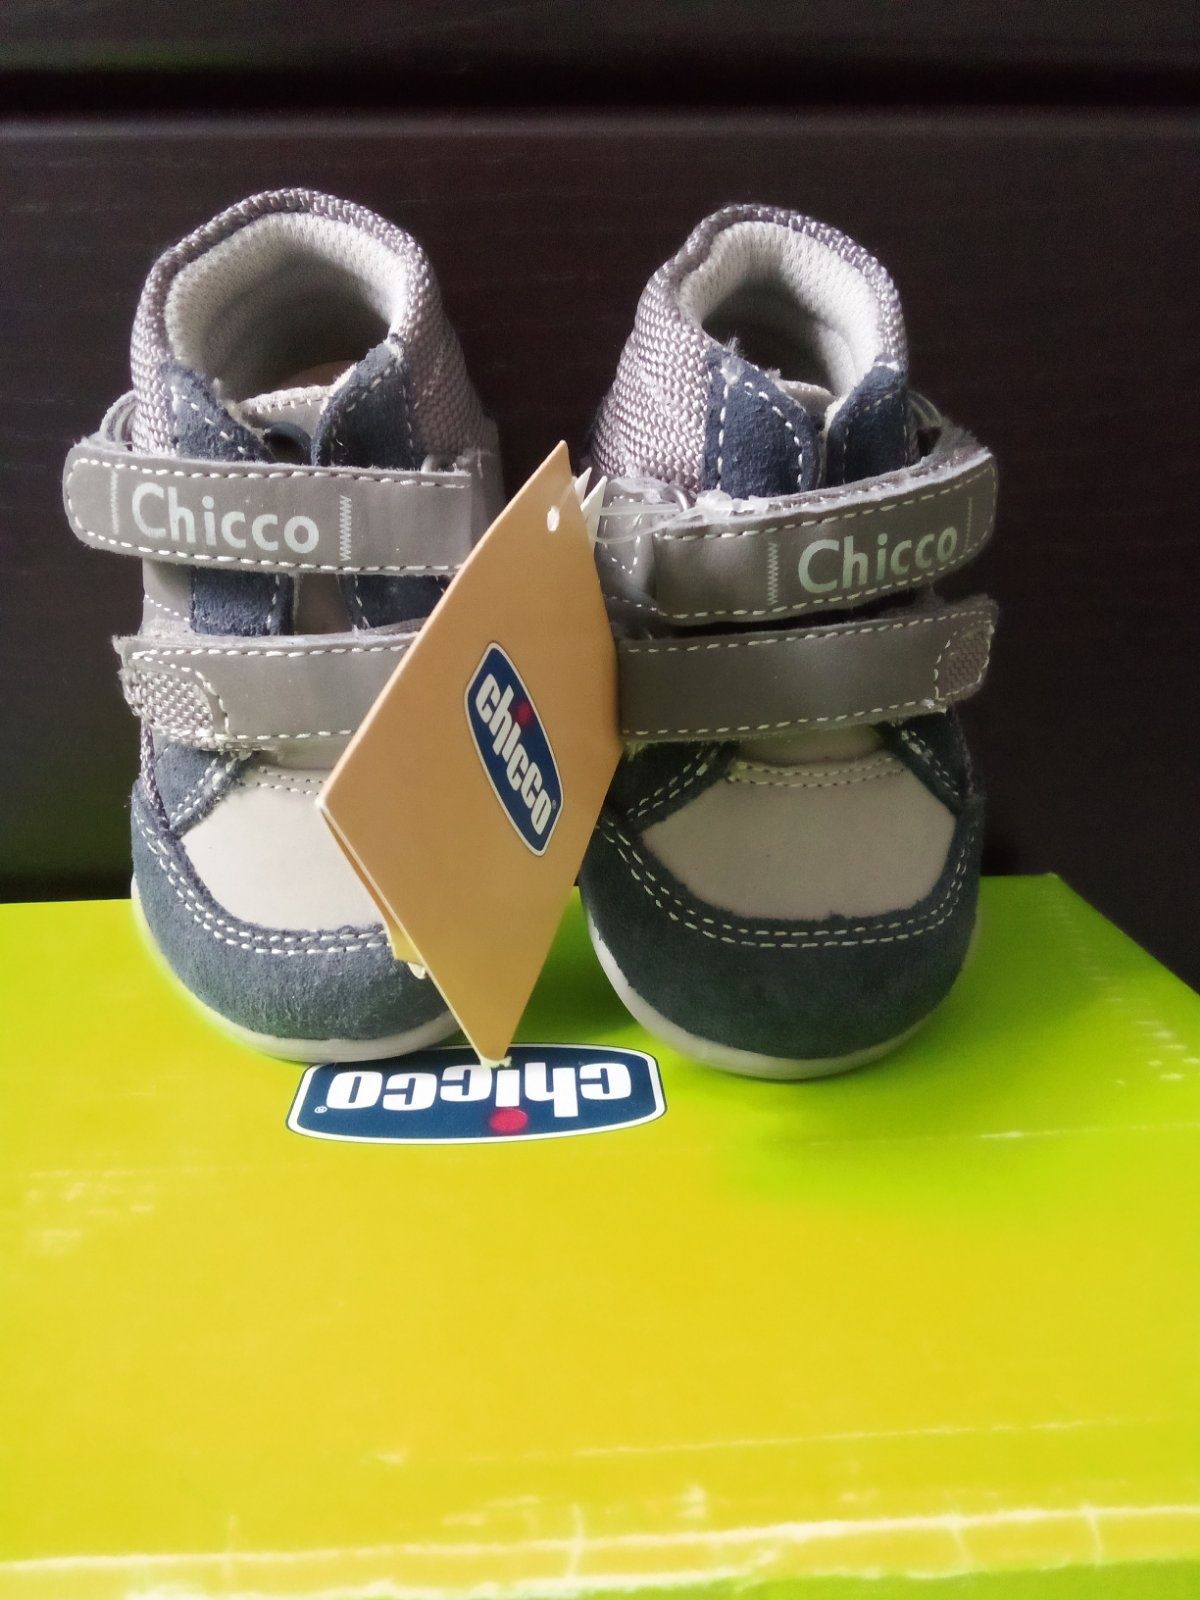 Дитяче взуття фірми chicco